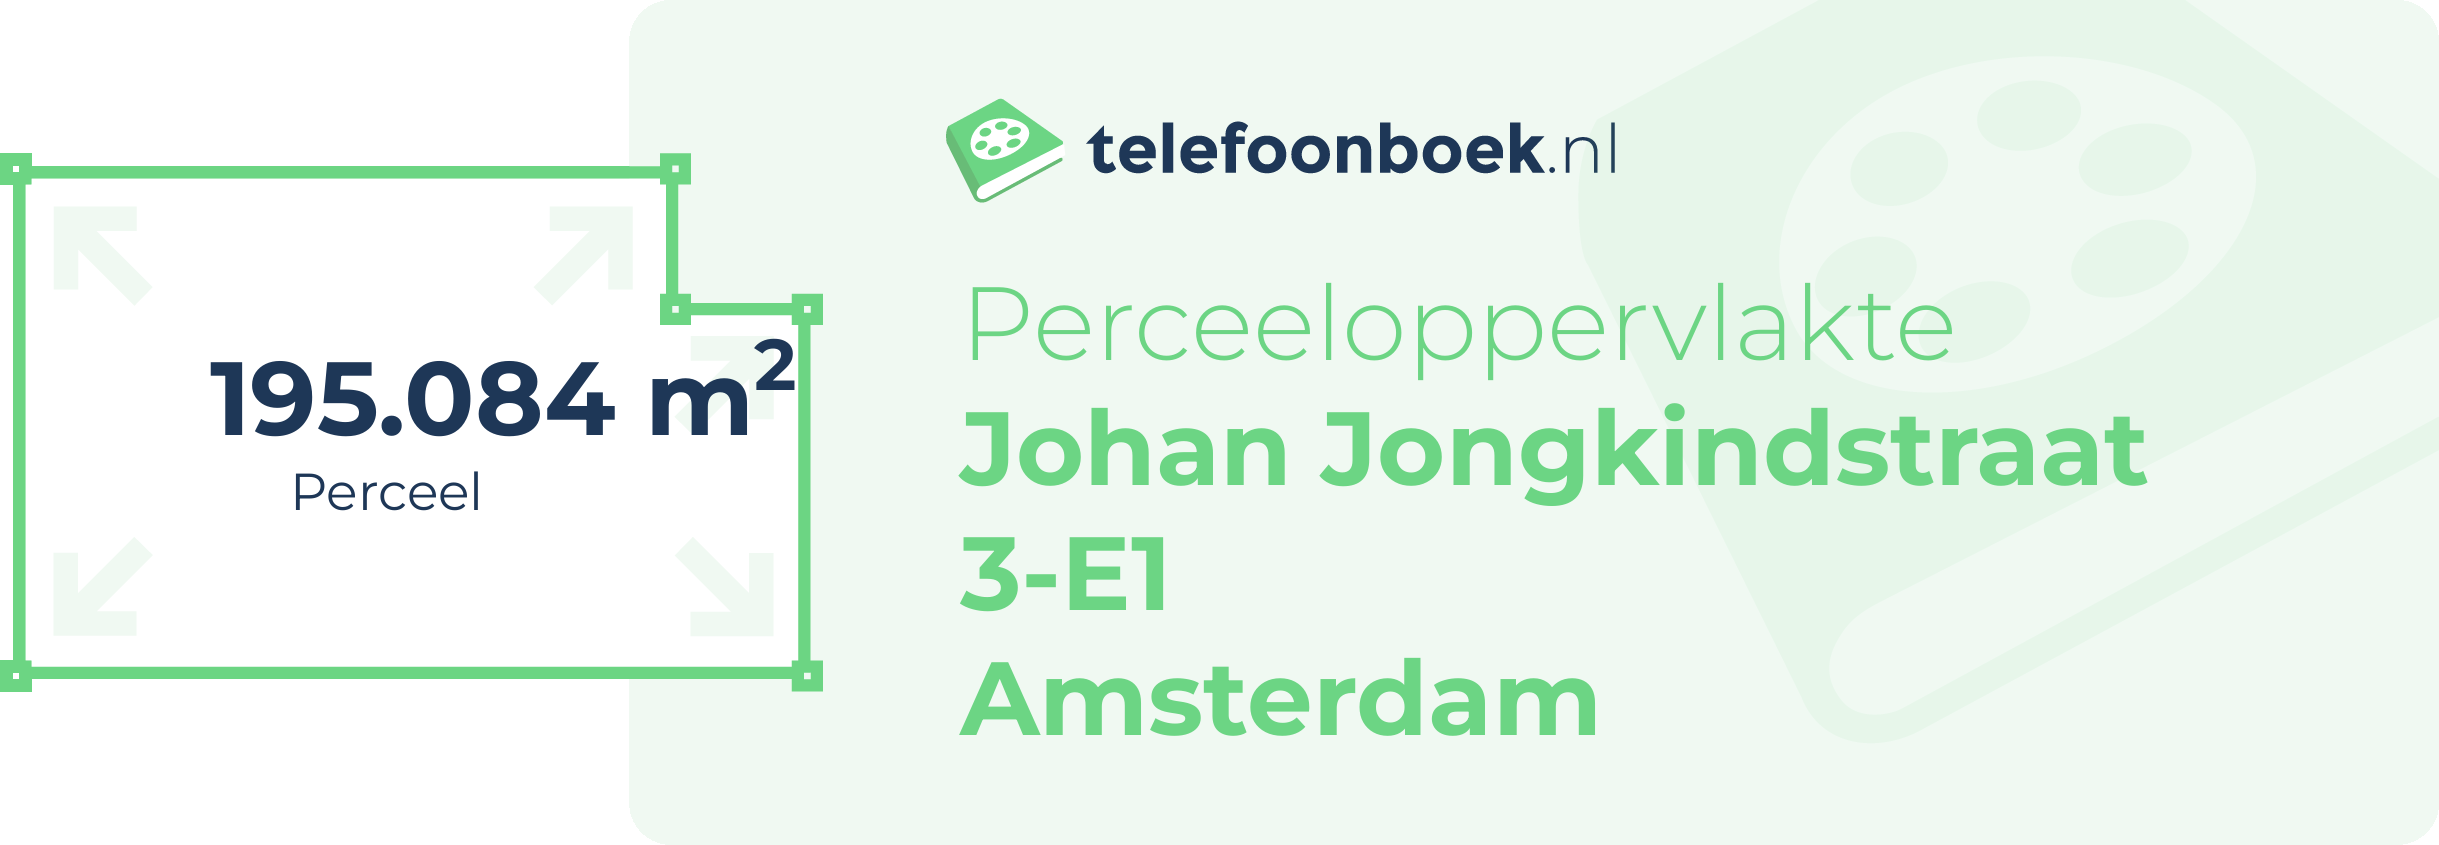 Perceeloppervlakte Johan Jongkindstraat 3-E1 Amsterdam